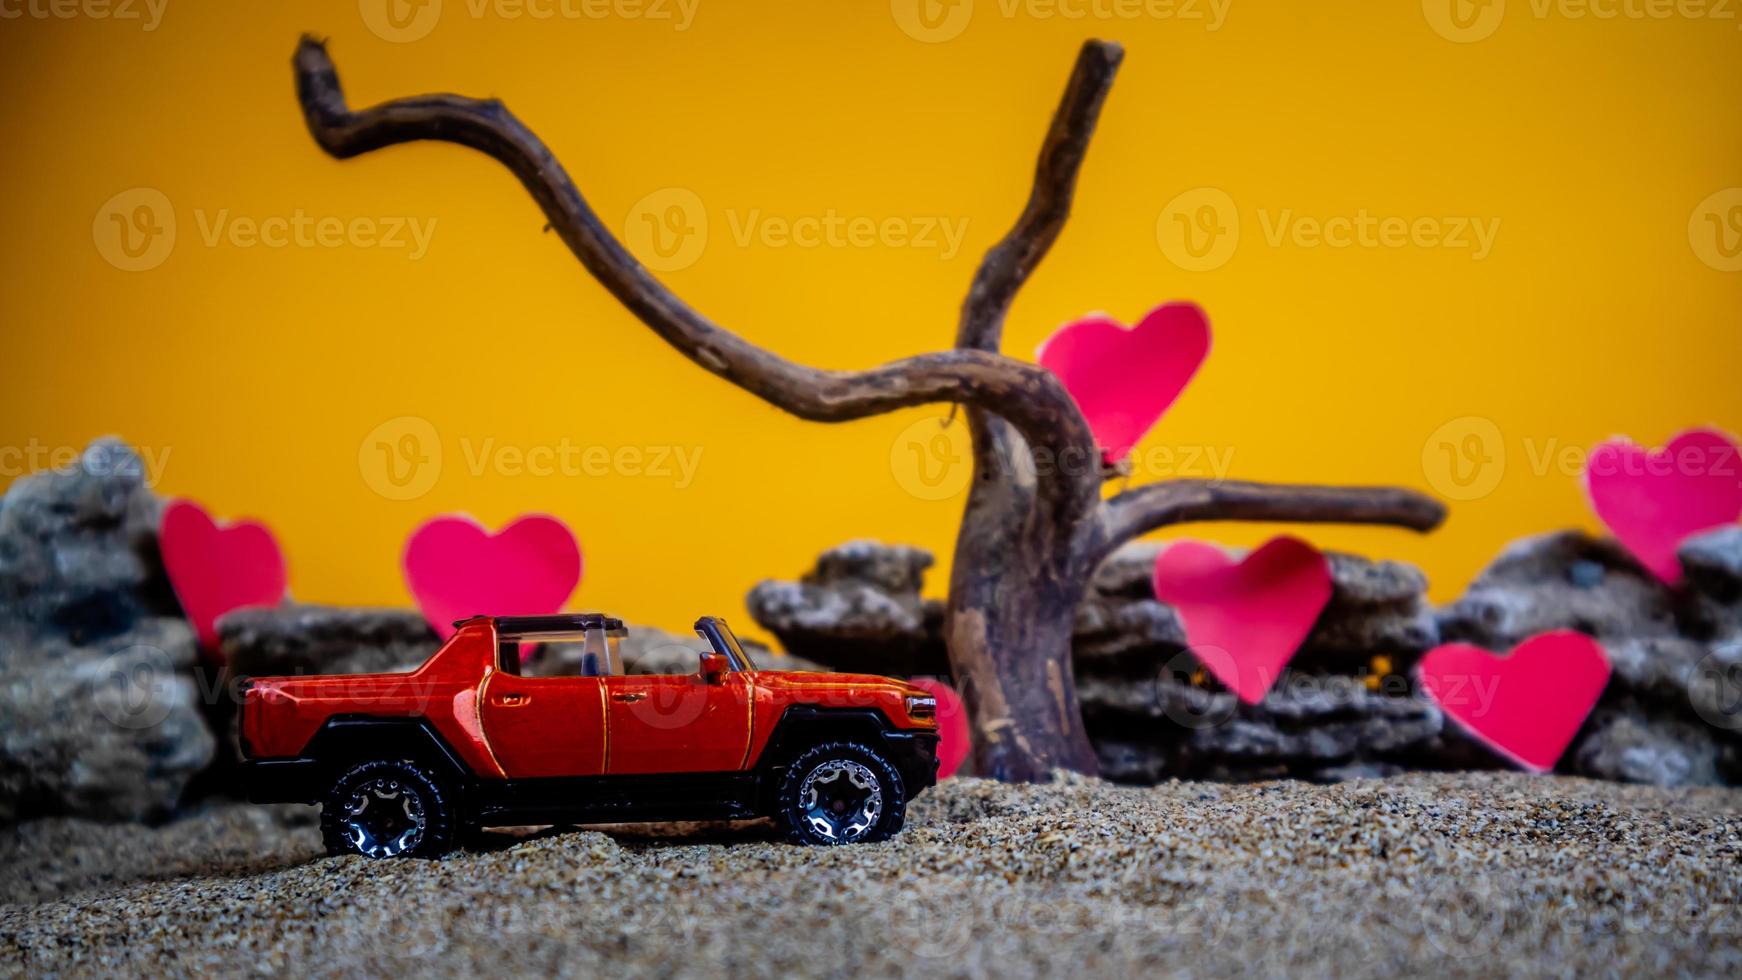 minahasa, indonesia diciembre de 2022, coche de juguete con fondo naranja degradado y corazón foto